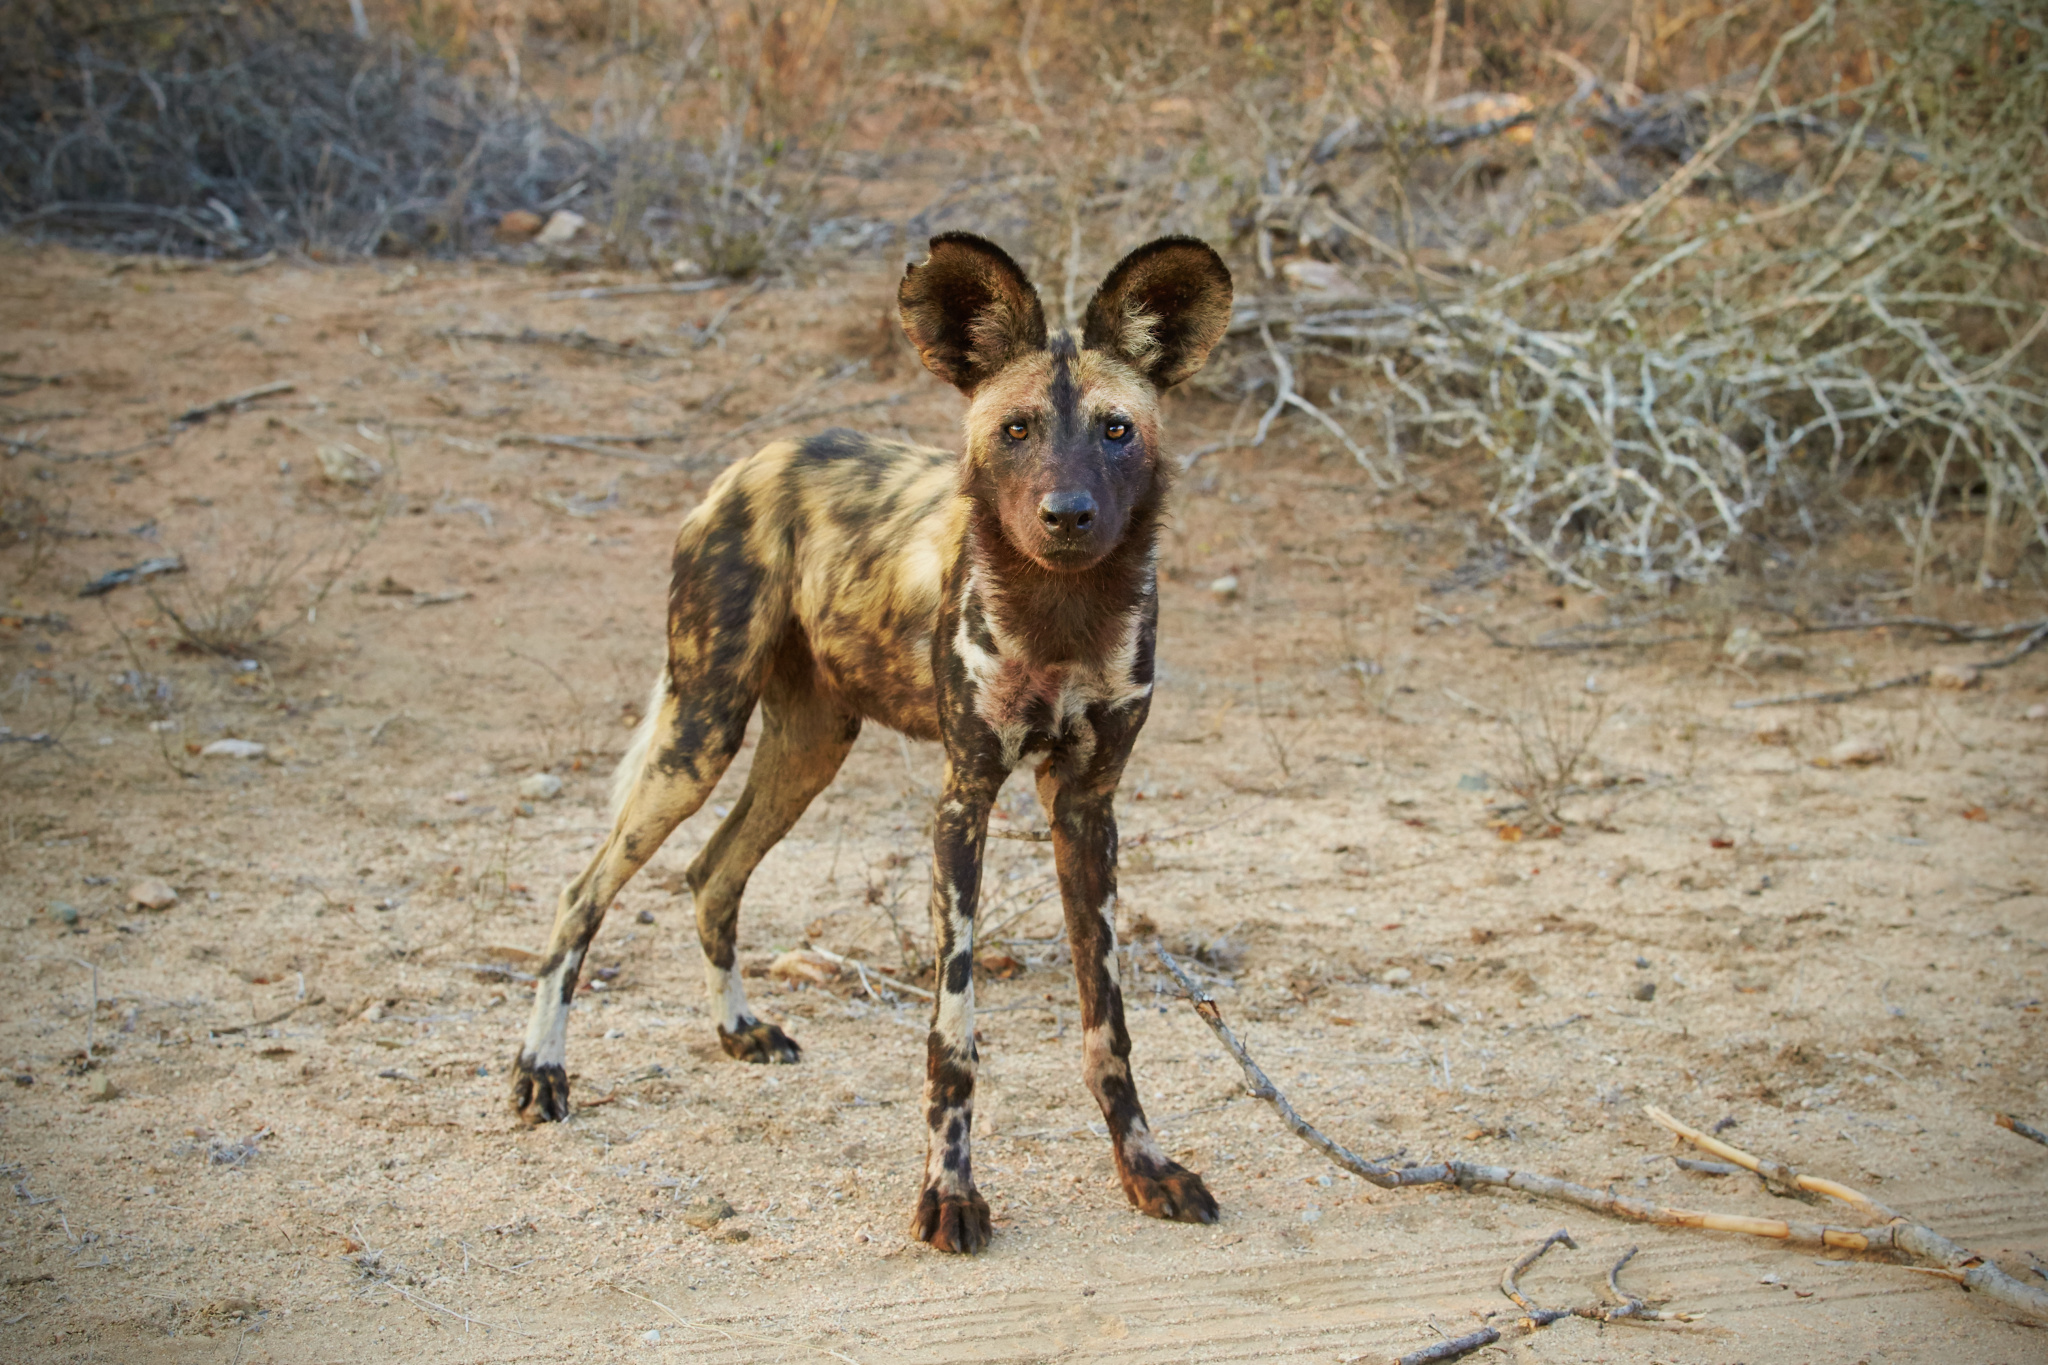 Fotoexpedition zu den afrikanischen Wildhunden - die schwer fassbaren Schatten Afrikas